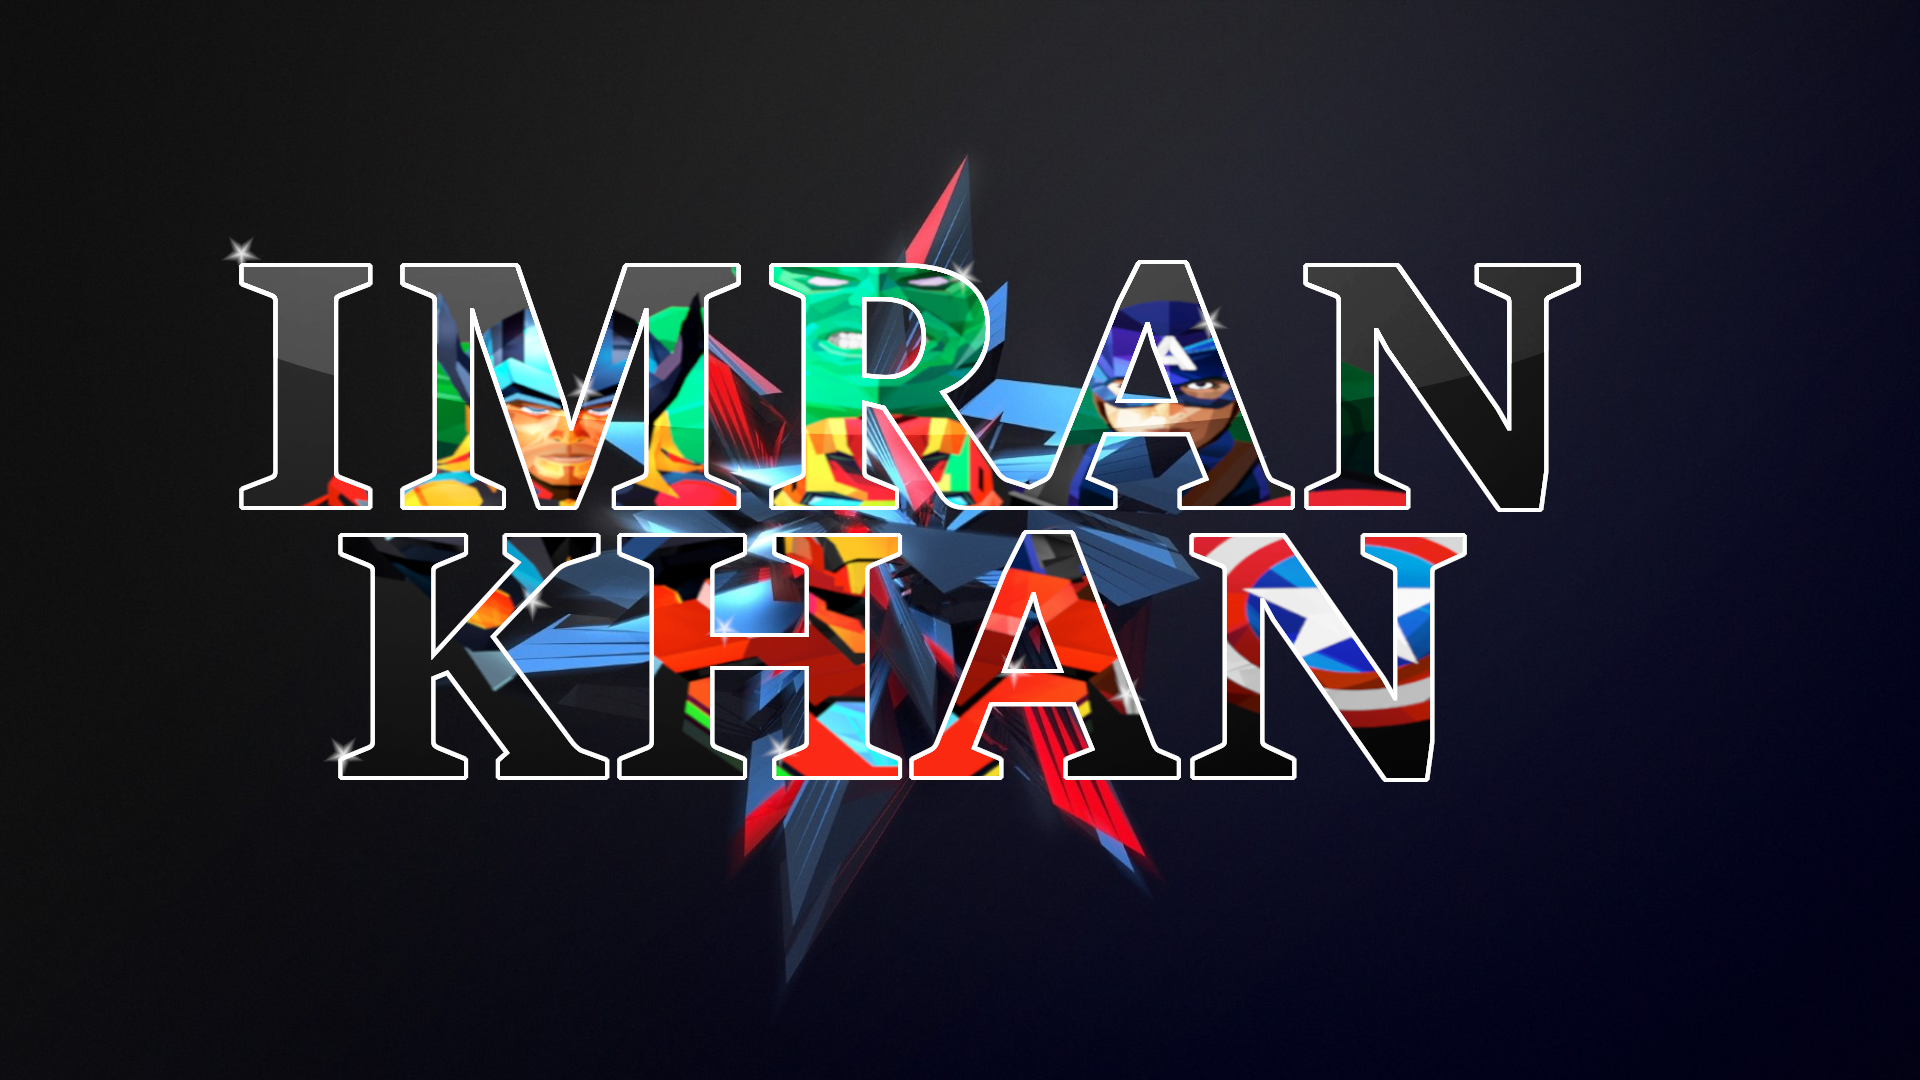 Imran Khan - Desktop Wallpapers, Phone Wallpaper, PFP, Gifs, and More!